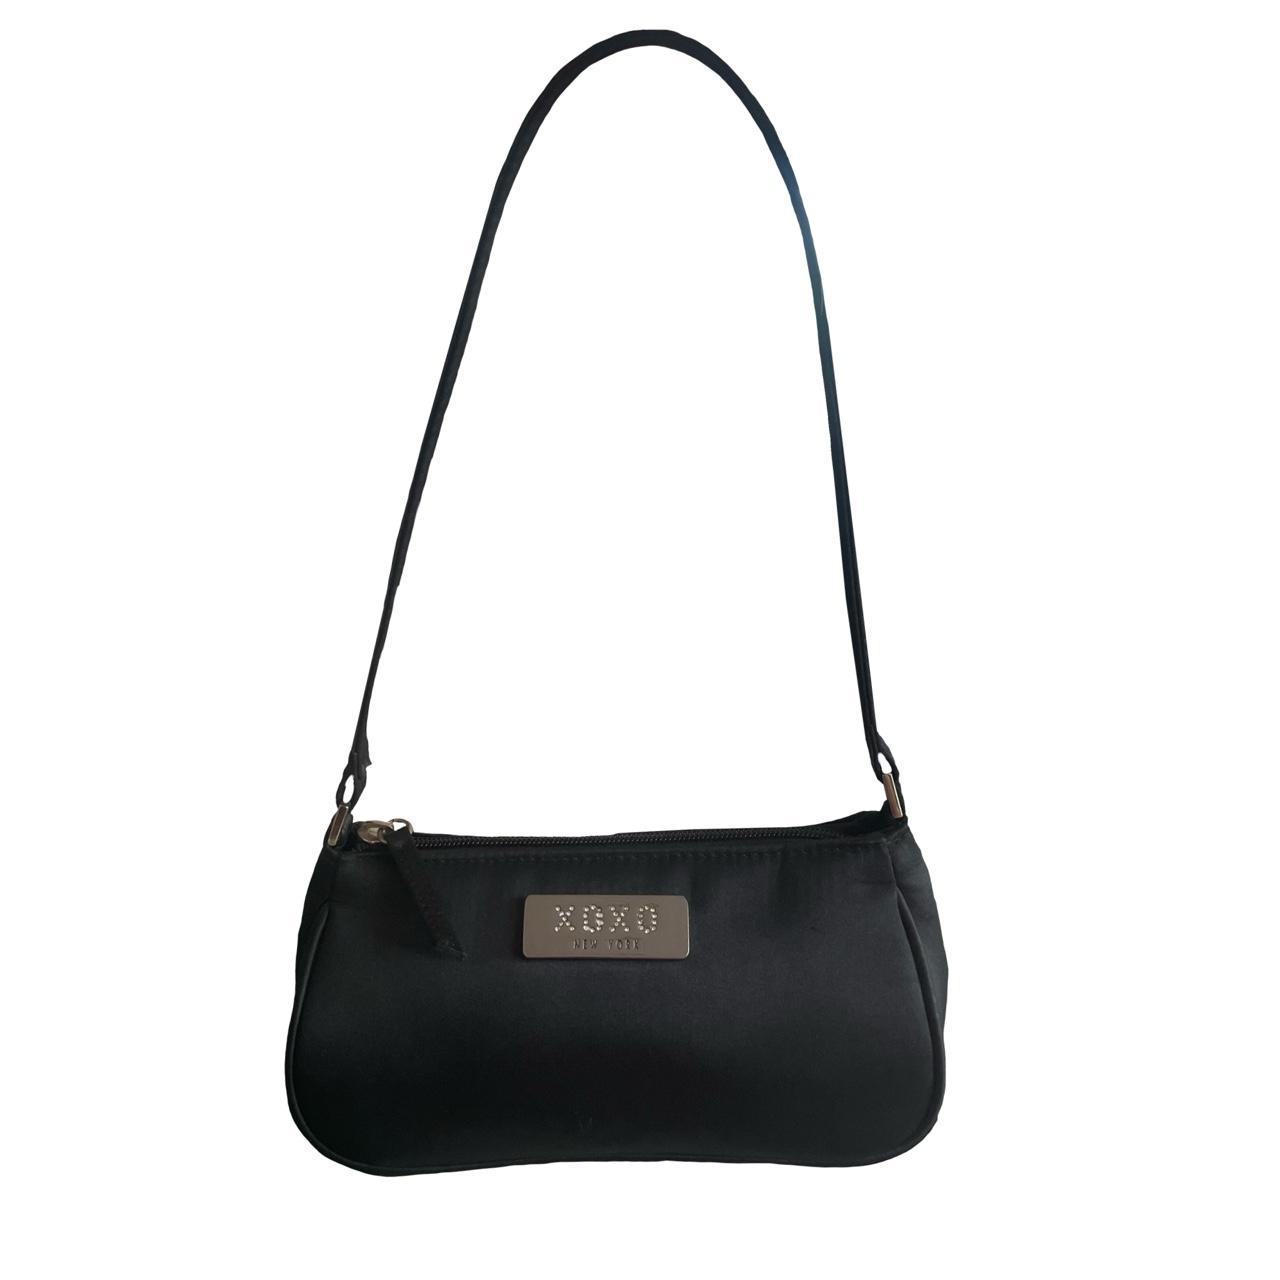 Valentina Black Shoulder Bag, Vegan Leather Bag Large Black Shoulder Bag  [Valentina]